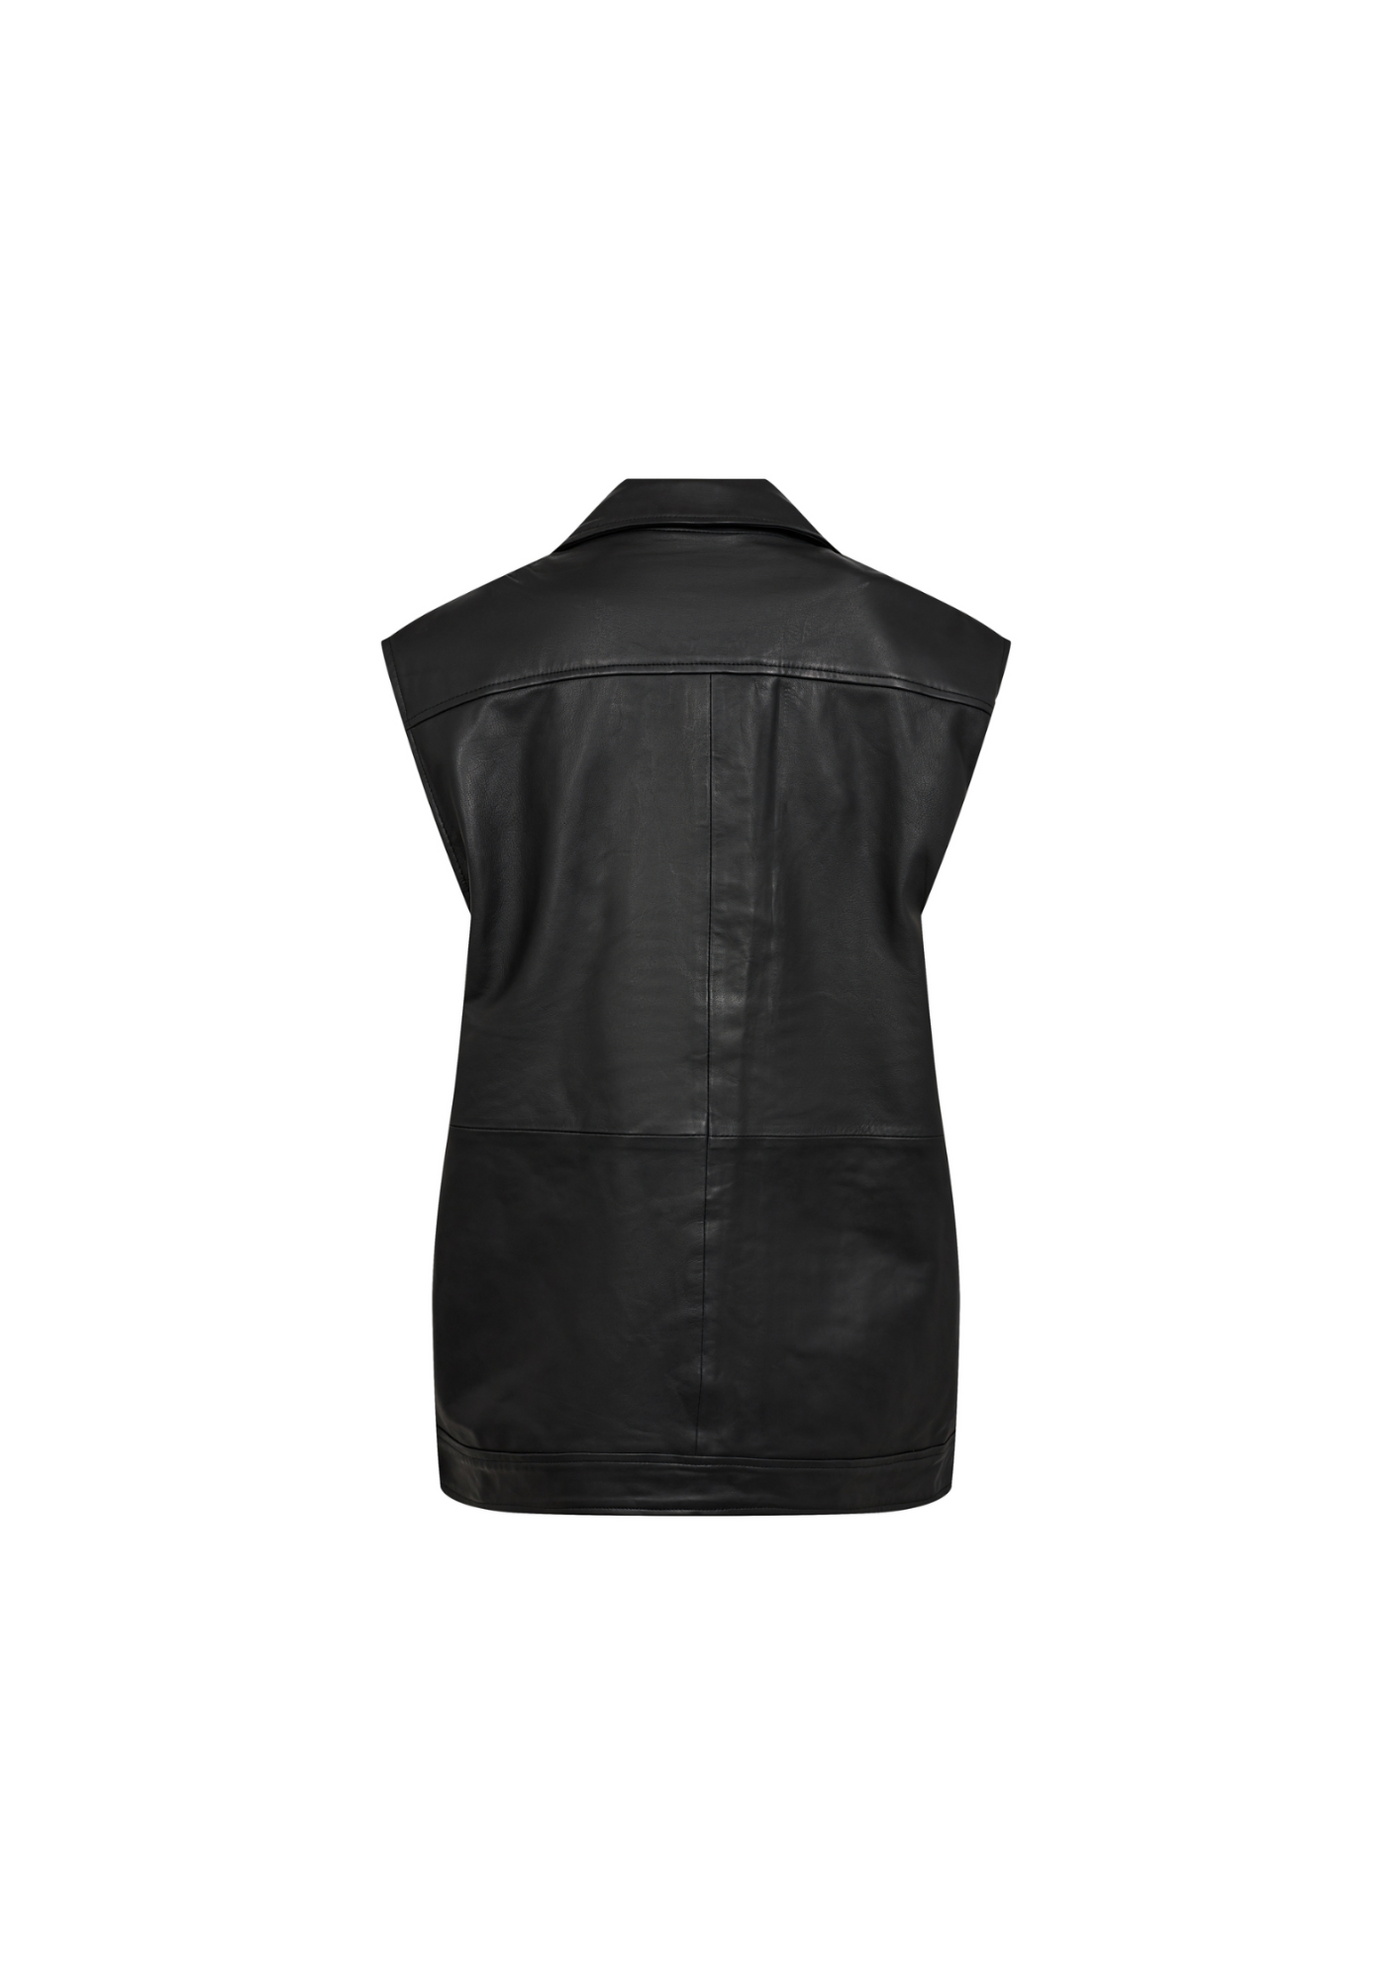 Co' Couture | PhoebeCC Leather Biker Vest